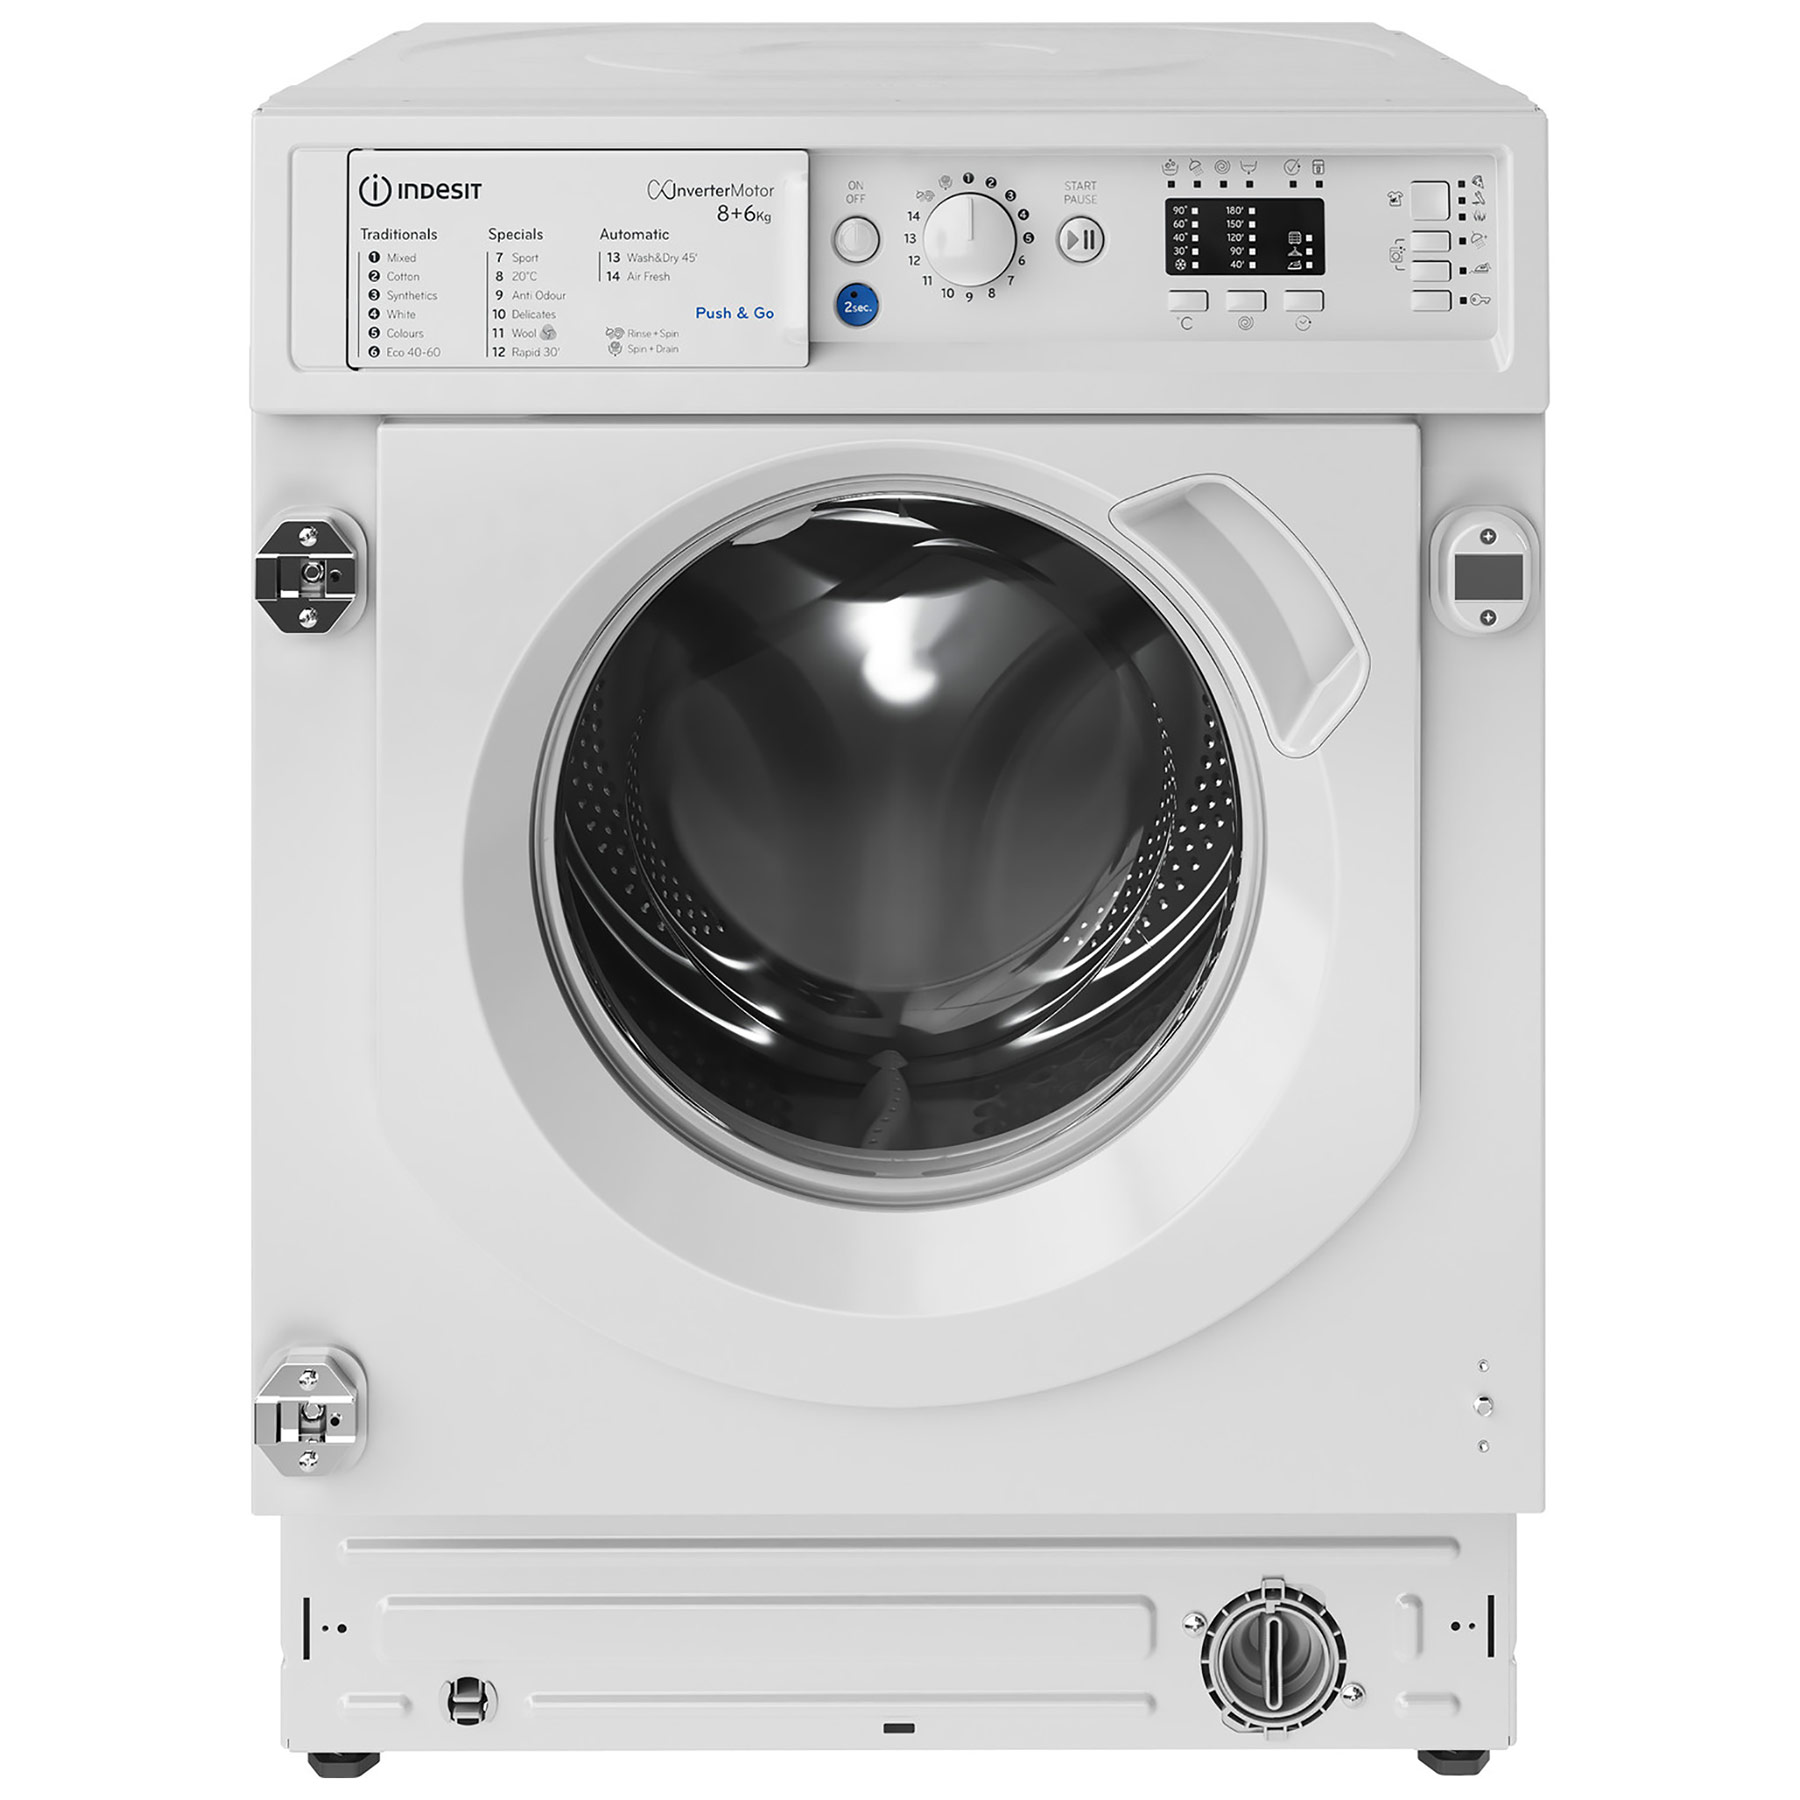 Image of Indesit BIWDIL861284 Integrated Washer Dryer 1200rpm 8kg 6kg D Rated